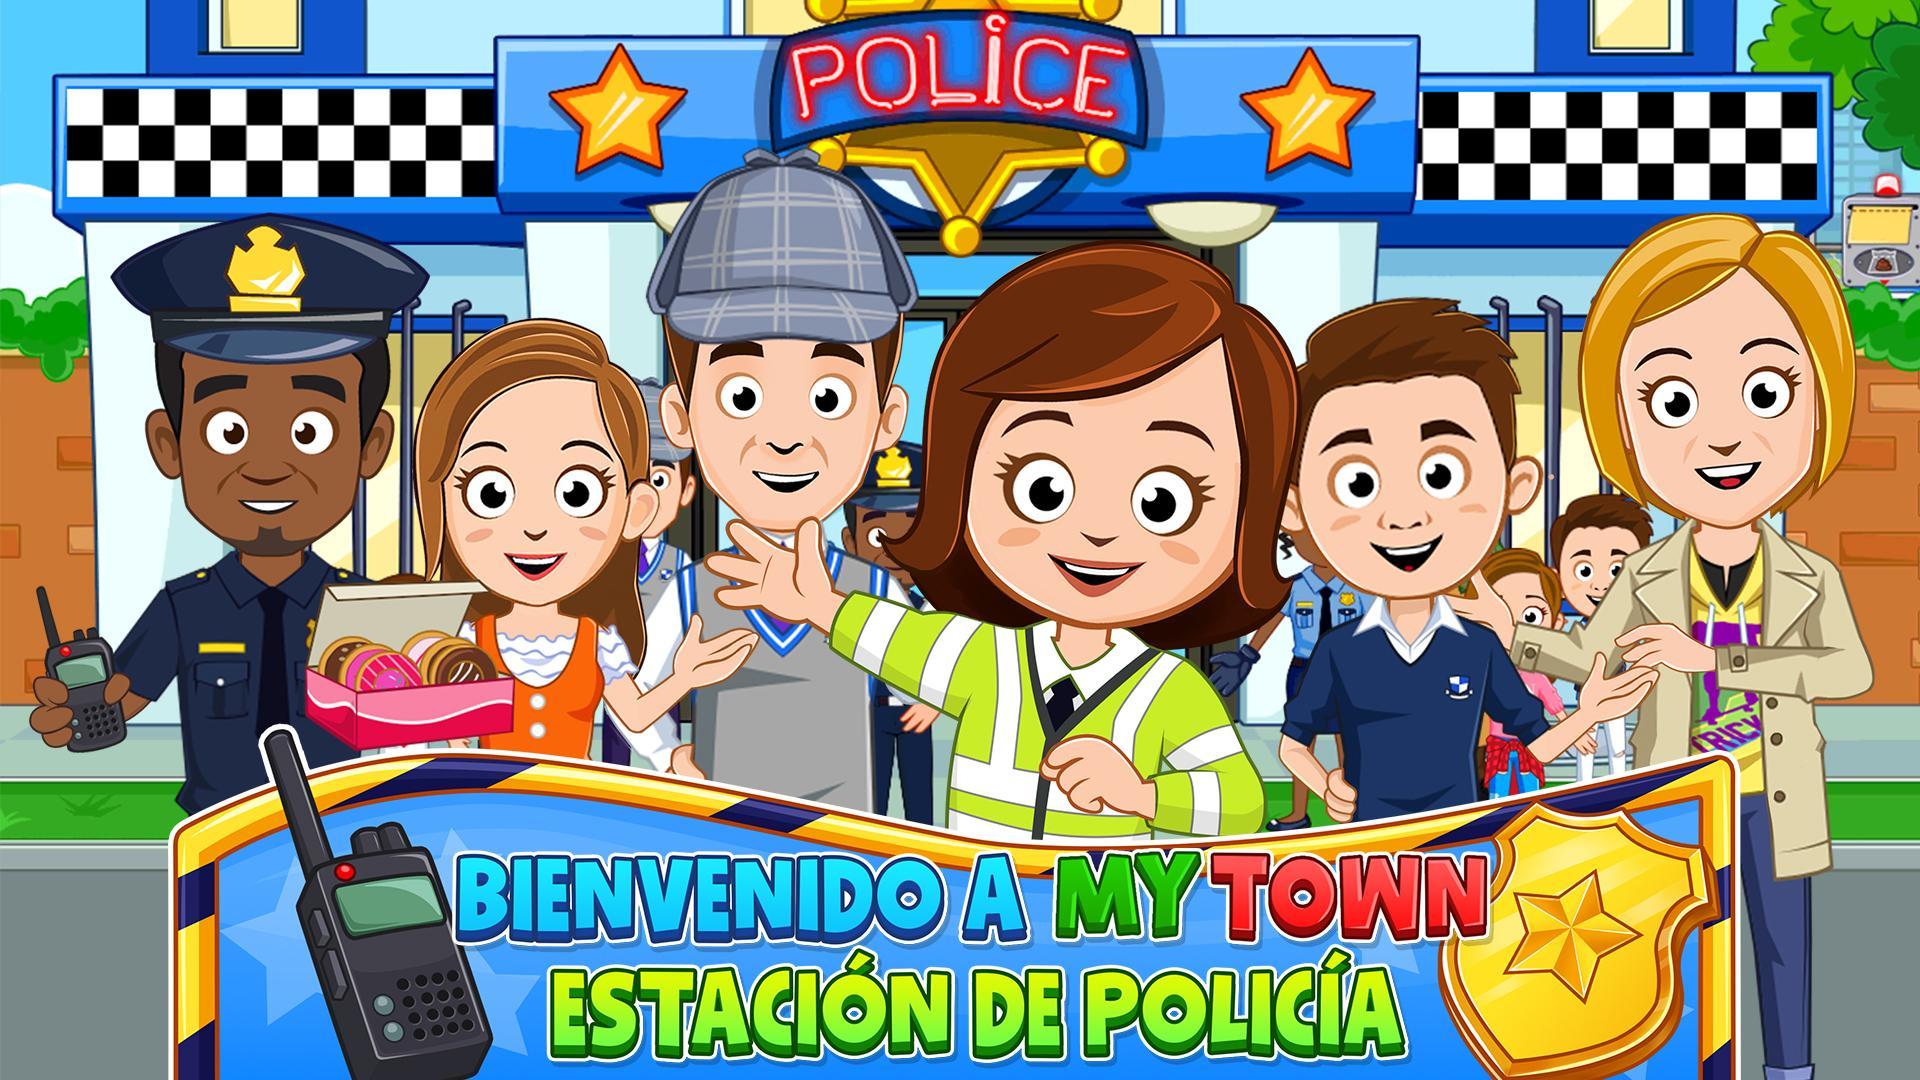 Screenshot 1 of My Town : Estación de policía 7.00.15